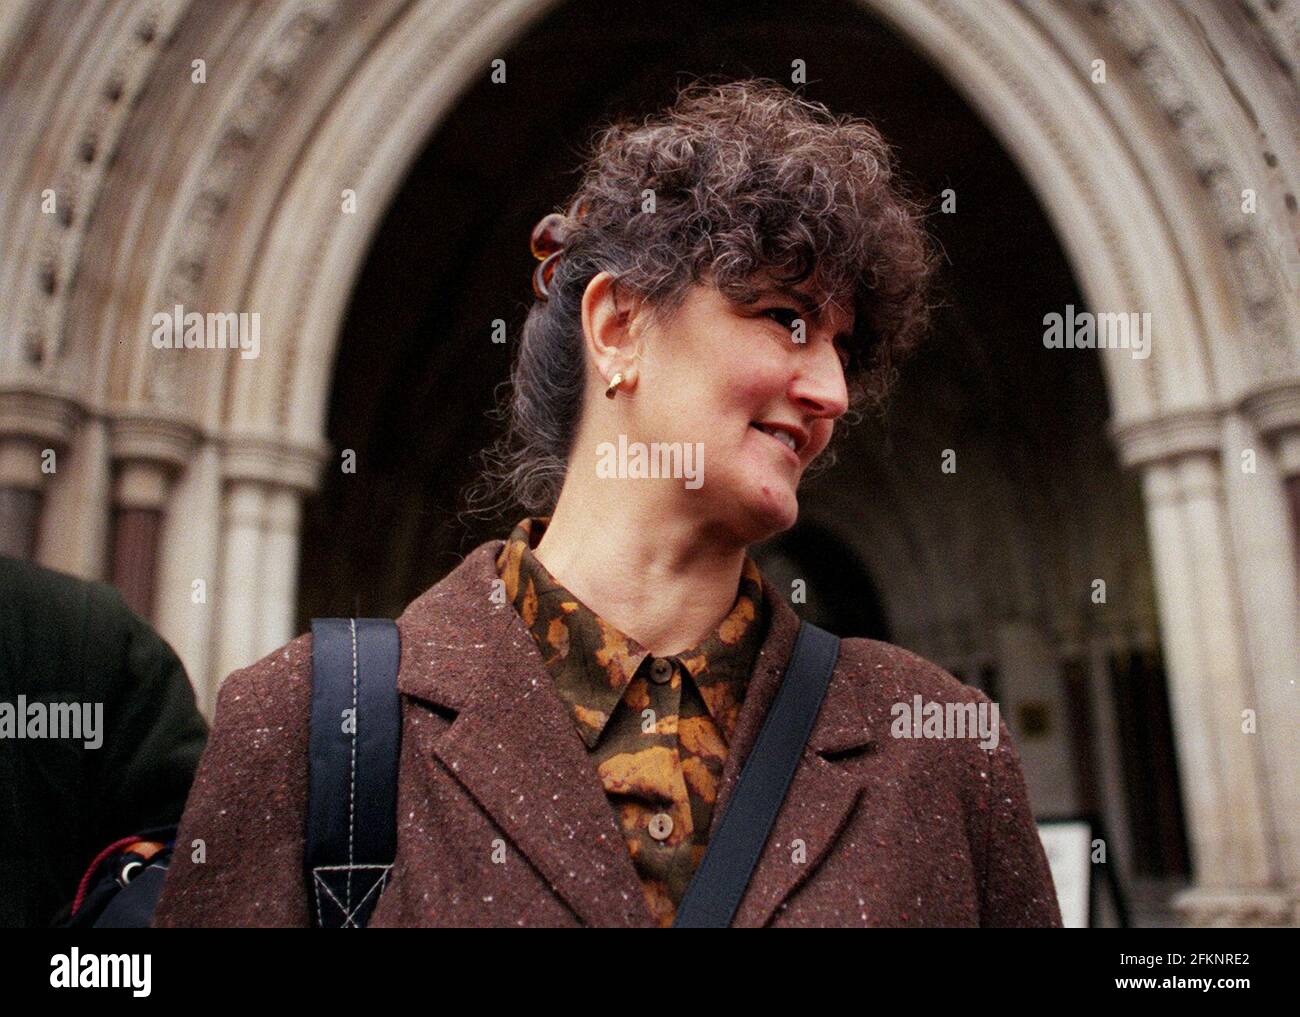 Annette Parsons lasciò l'alta corte dopo che al marito Brian fu negato l'appello per l'omicidio. Foto Stock